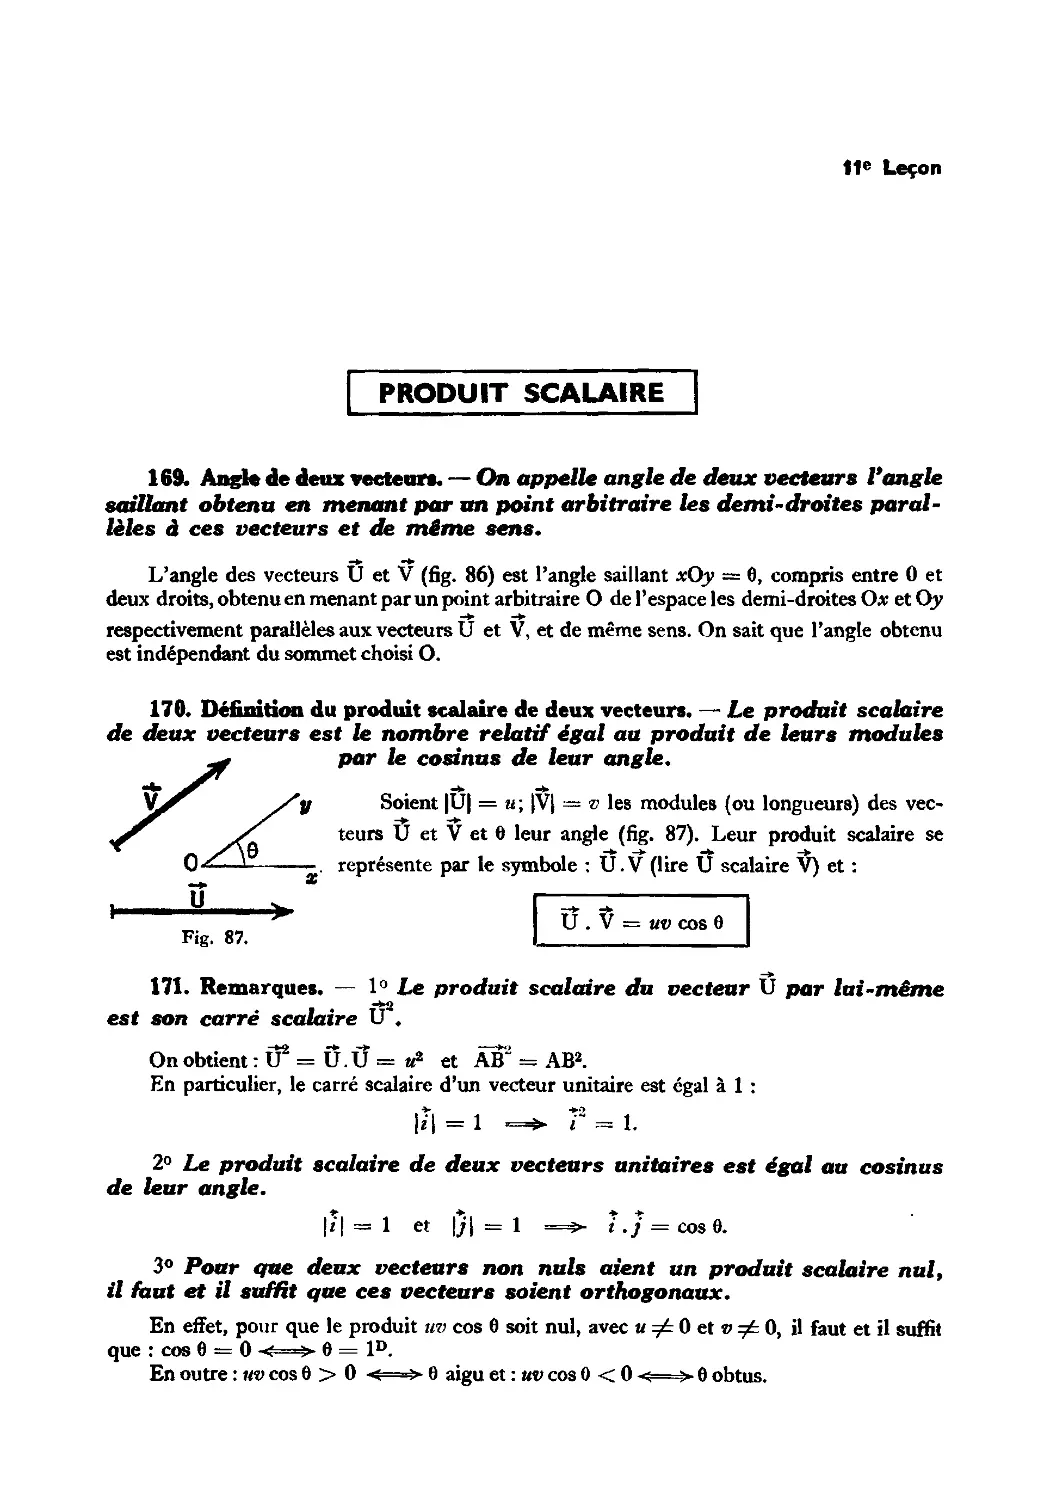 Leçon 11 — Produit scalaire — Relations trigonométriques dans le triangle
170. Définition du produit scalaire de deux vecteurs
171. Remarques